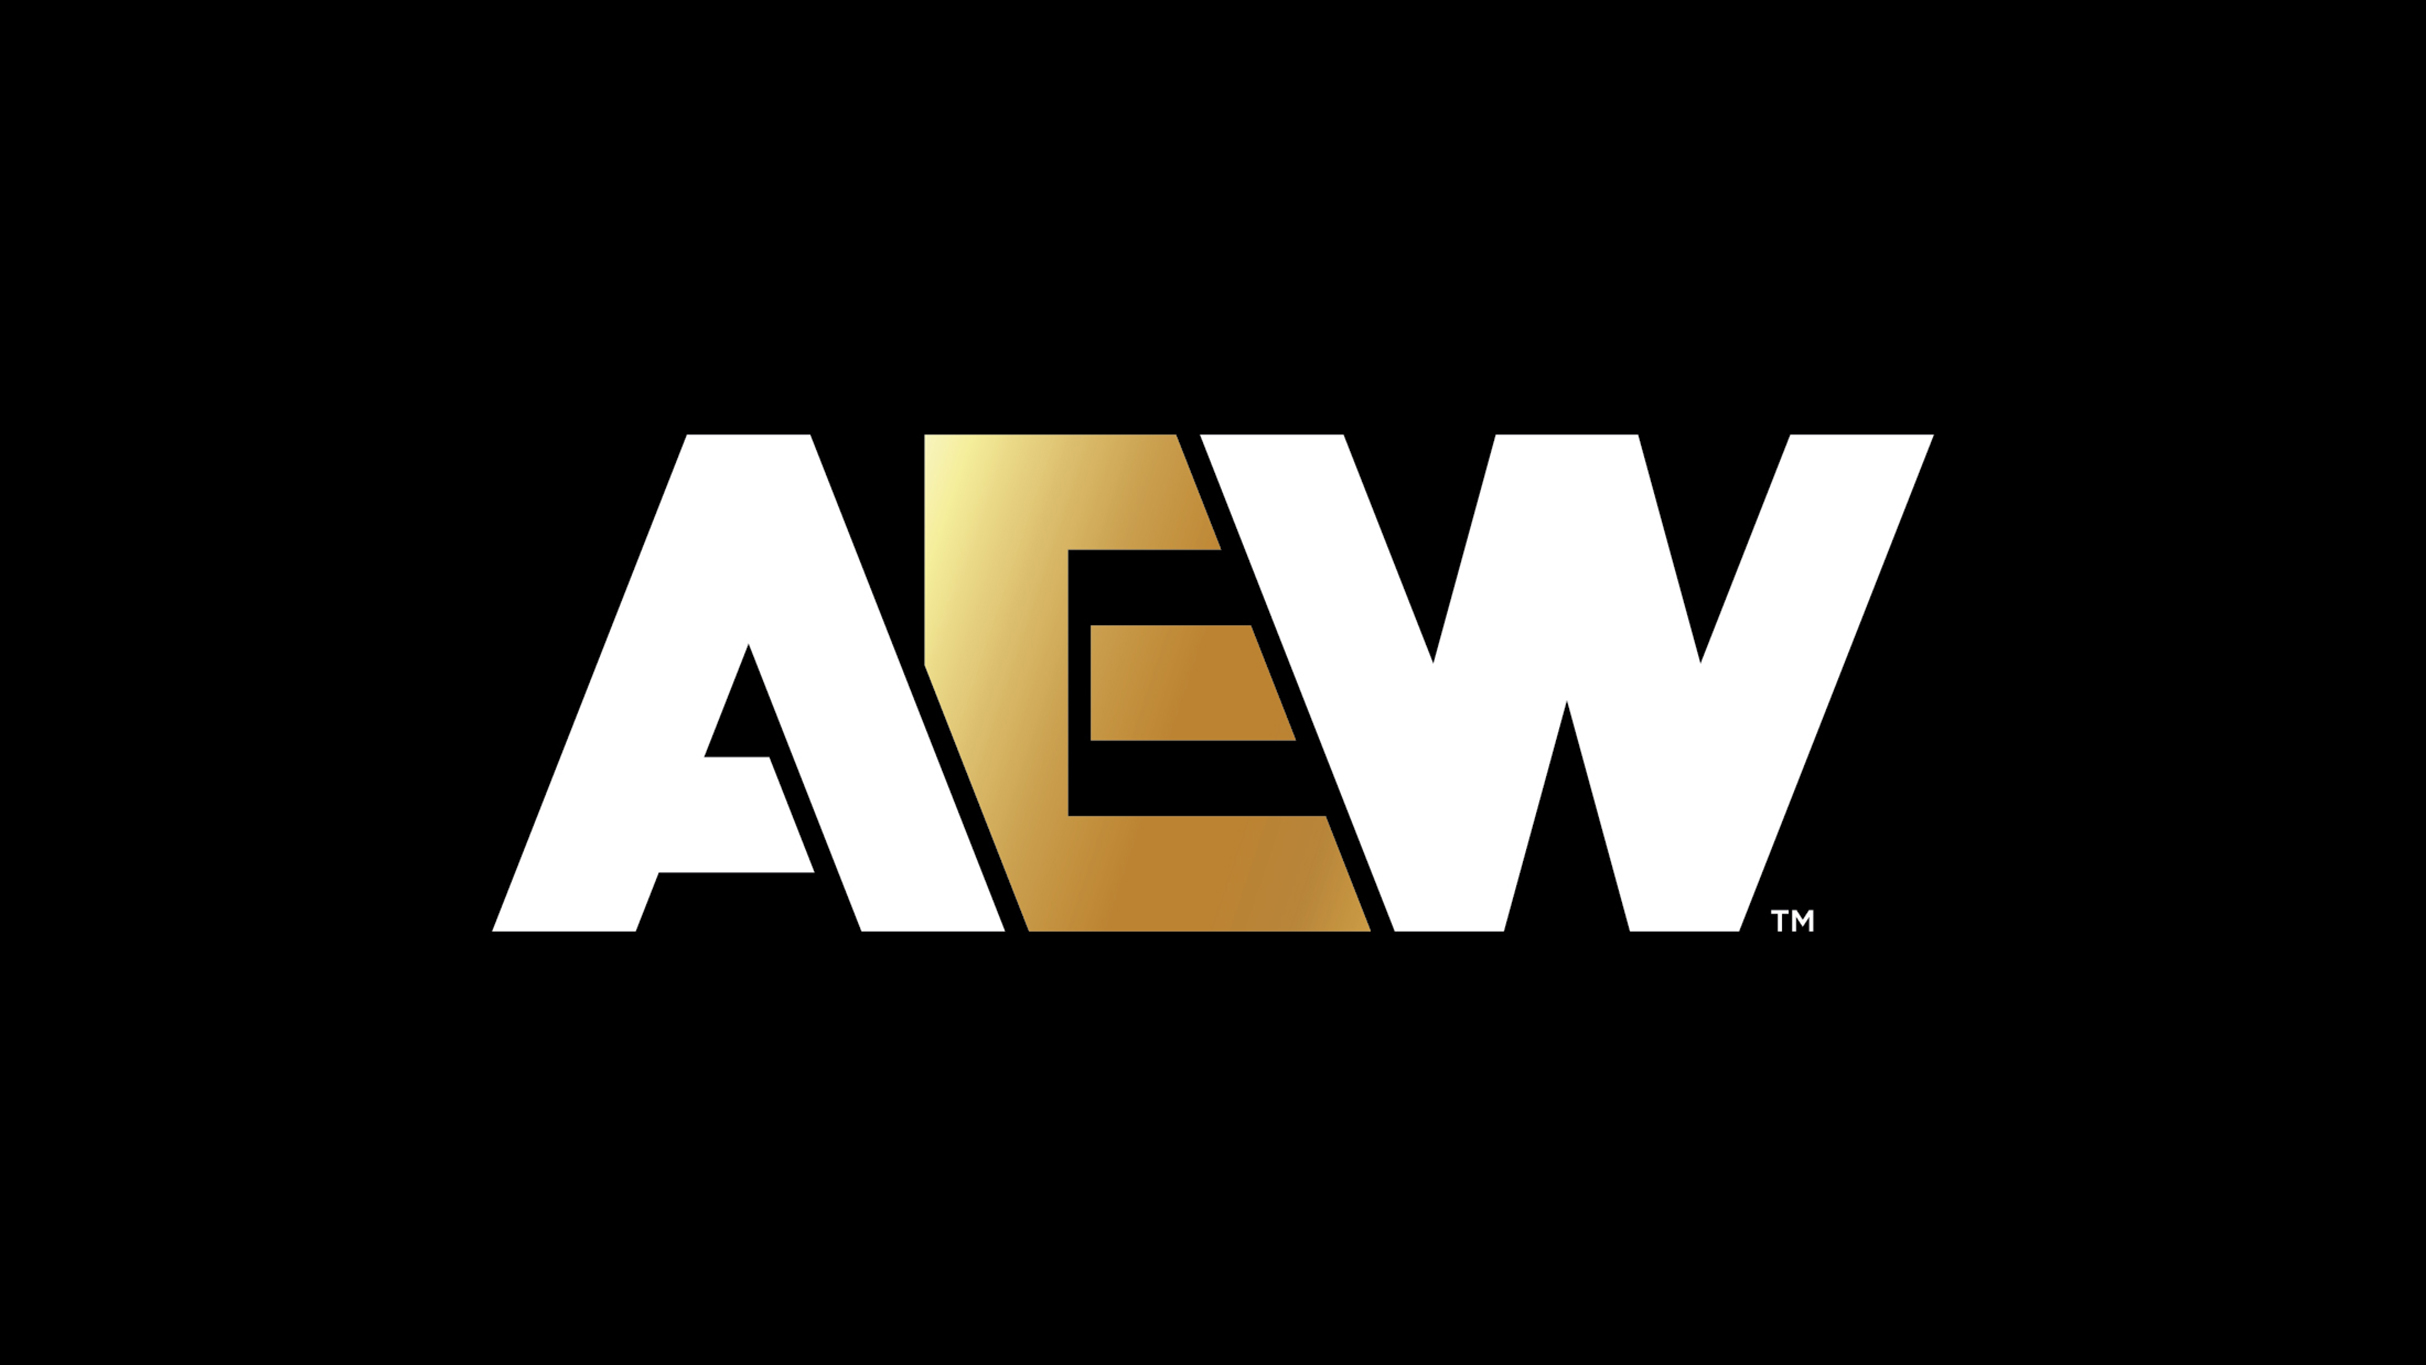 AEW X NJPW Present Forbidden Door